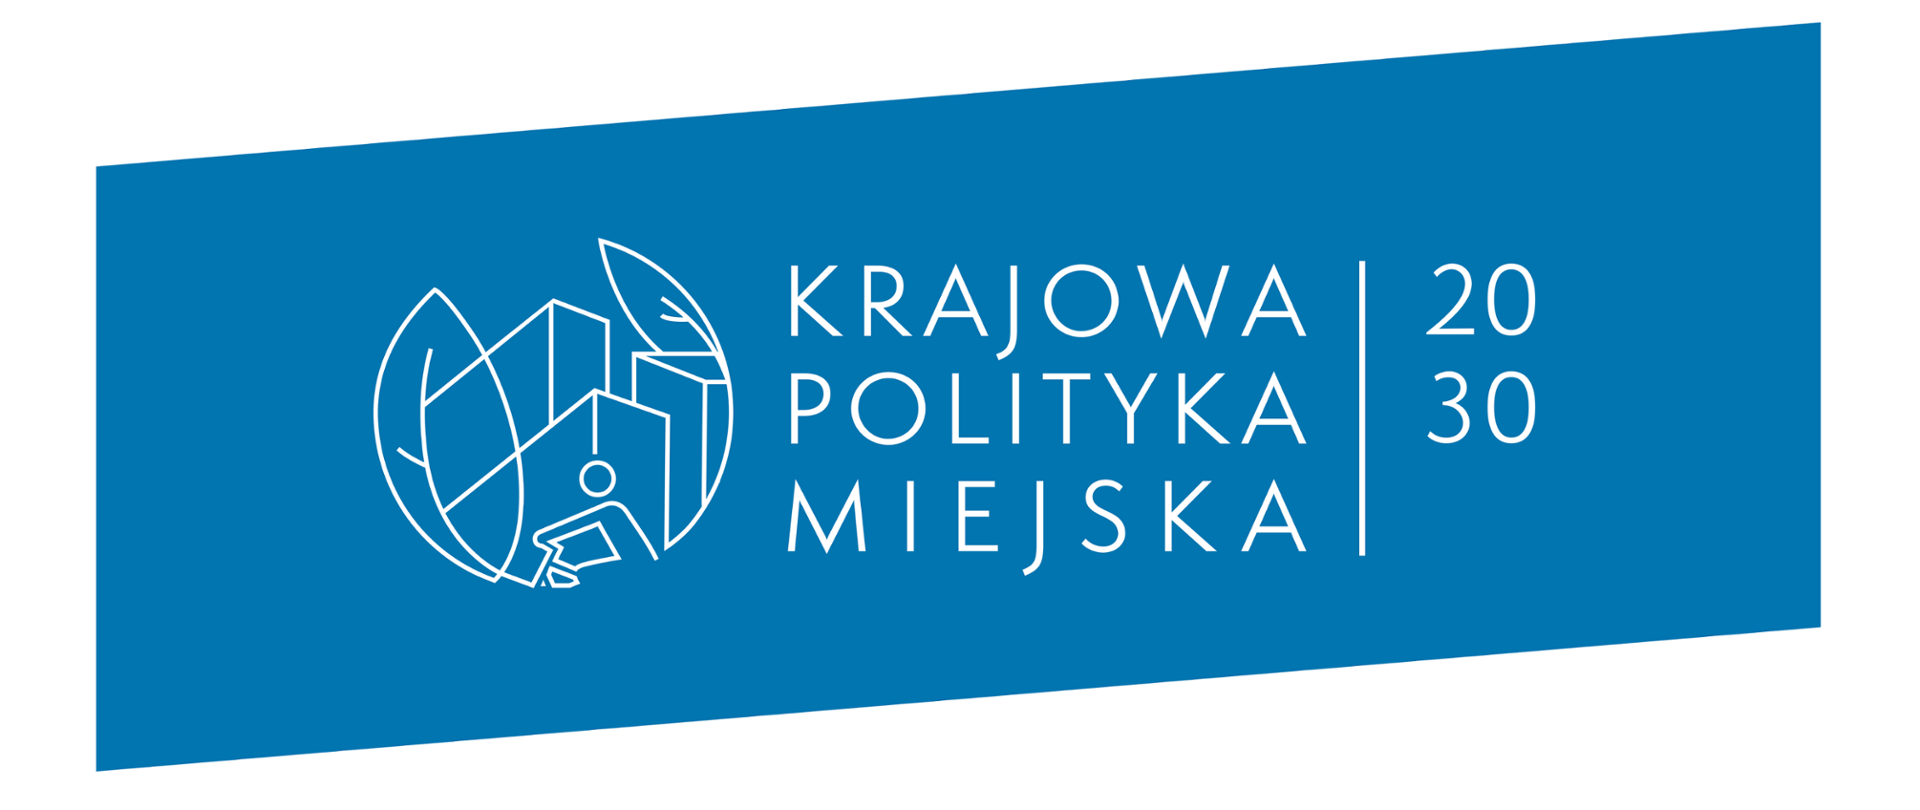 Logo Krajowej Polityki Miejskiej na niebieskim tle 